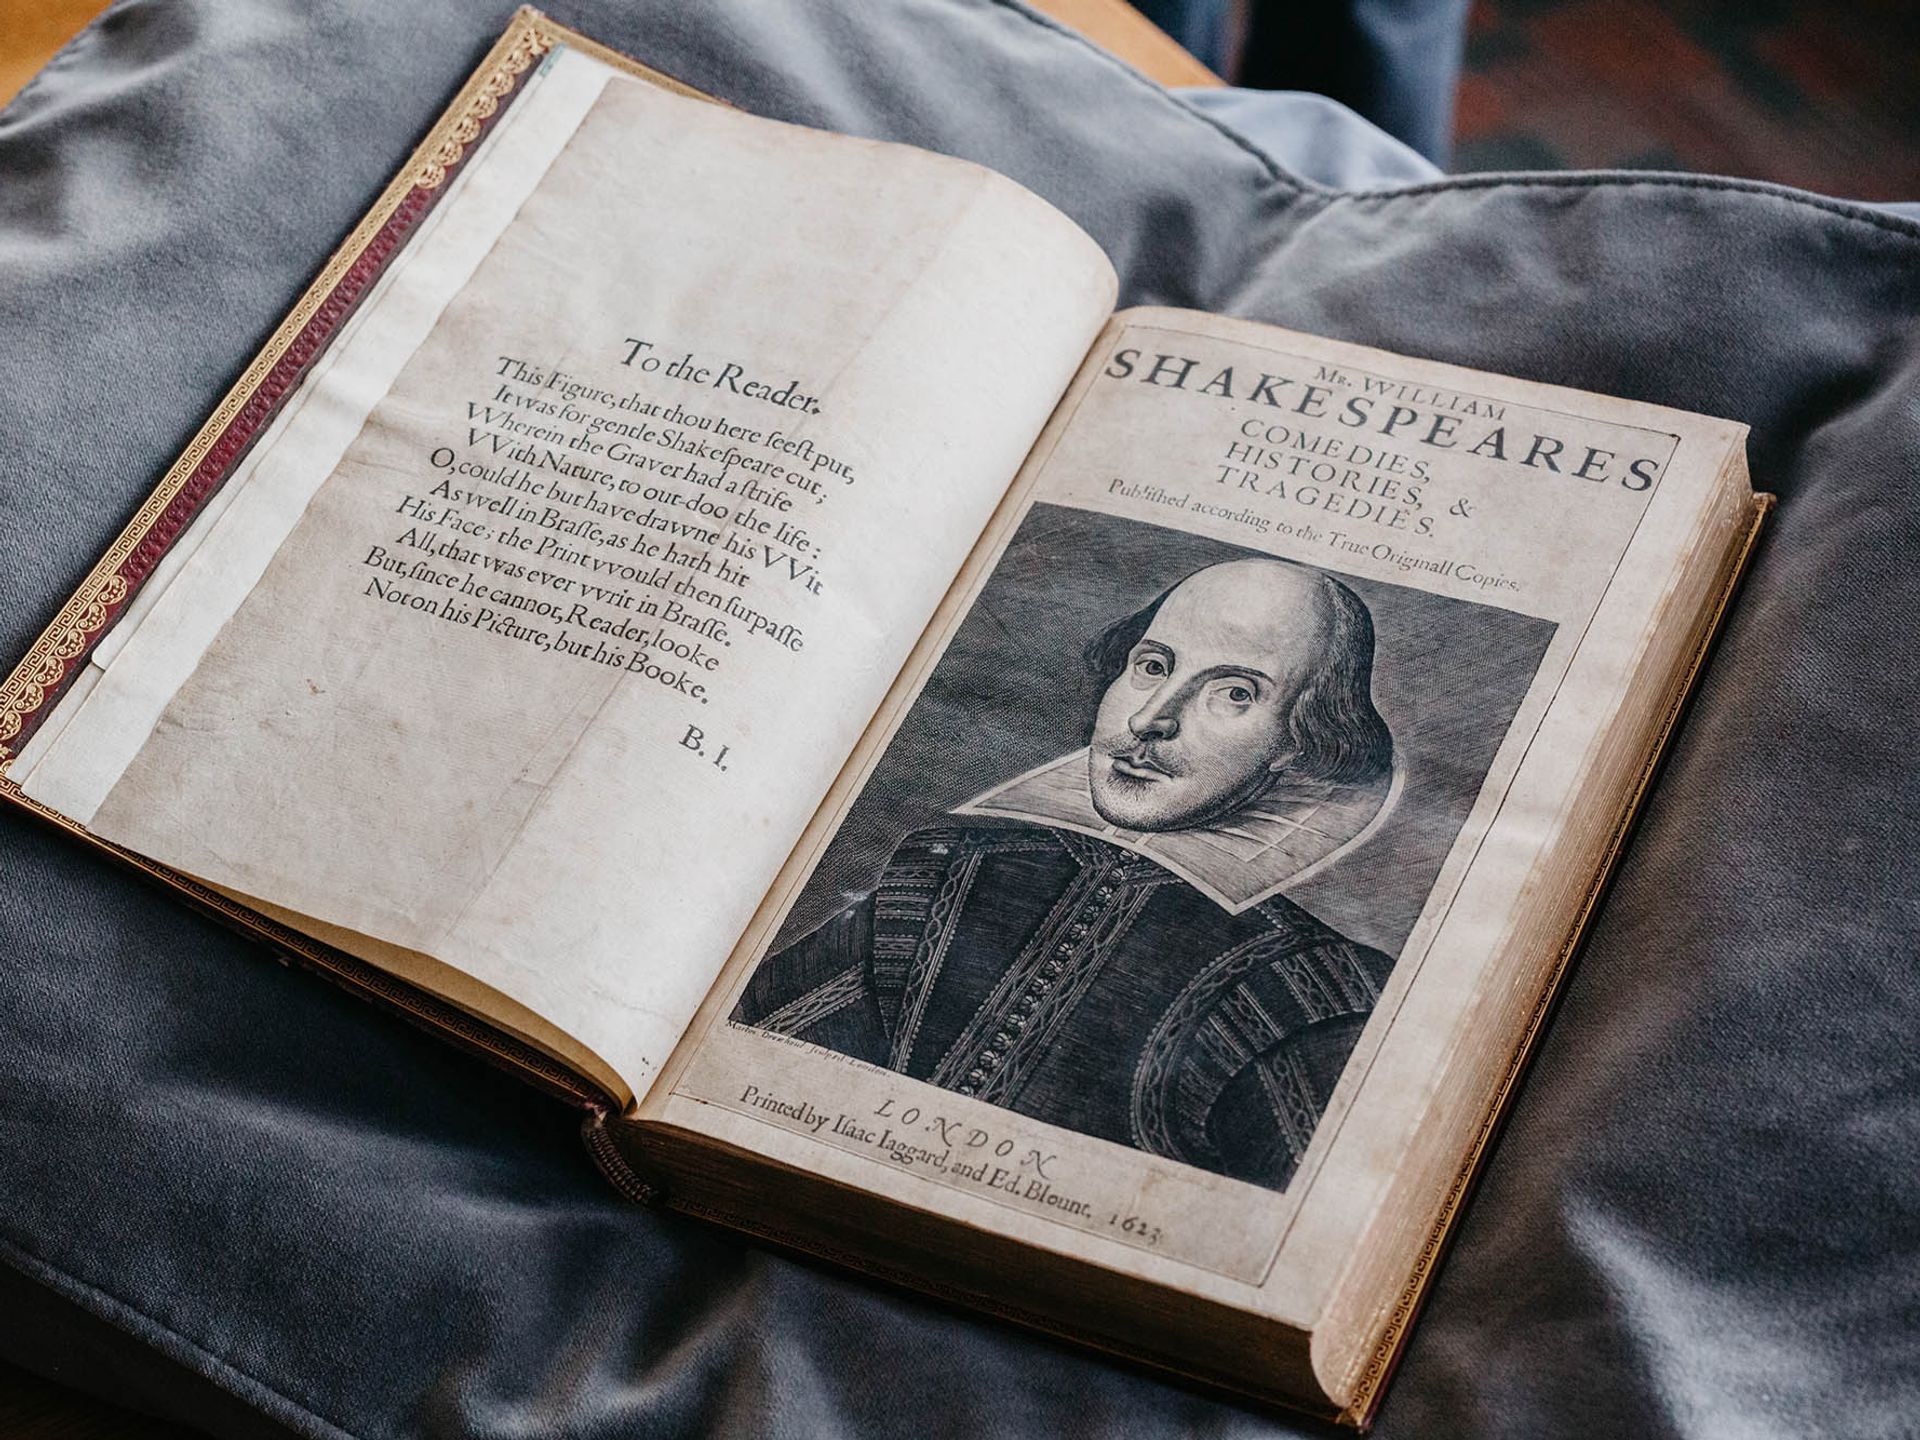 ה-First Folio שזה עתה נרכש עם הקומדיות והטרגדיות של ויליאם שייקספיר (1623)

באדיבות ספריית אוניברסיטת קולומביה הבריטית, ונקובר